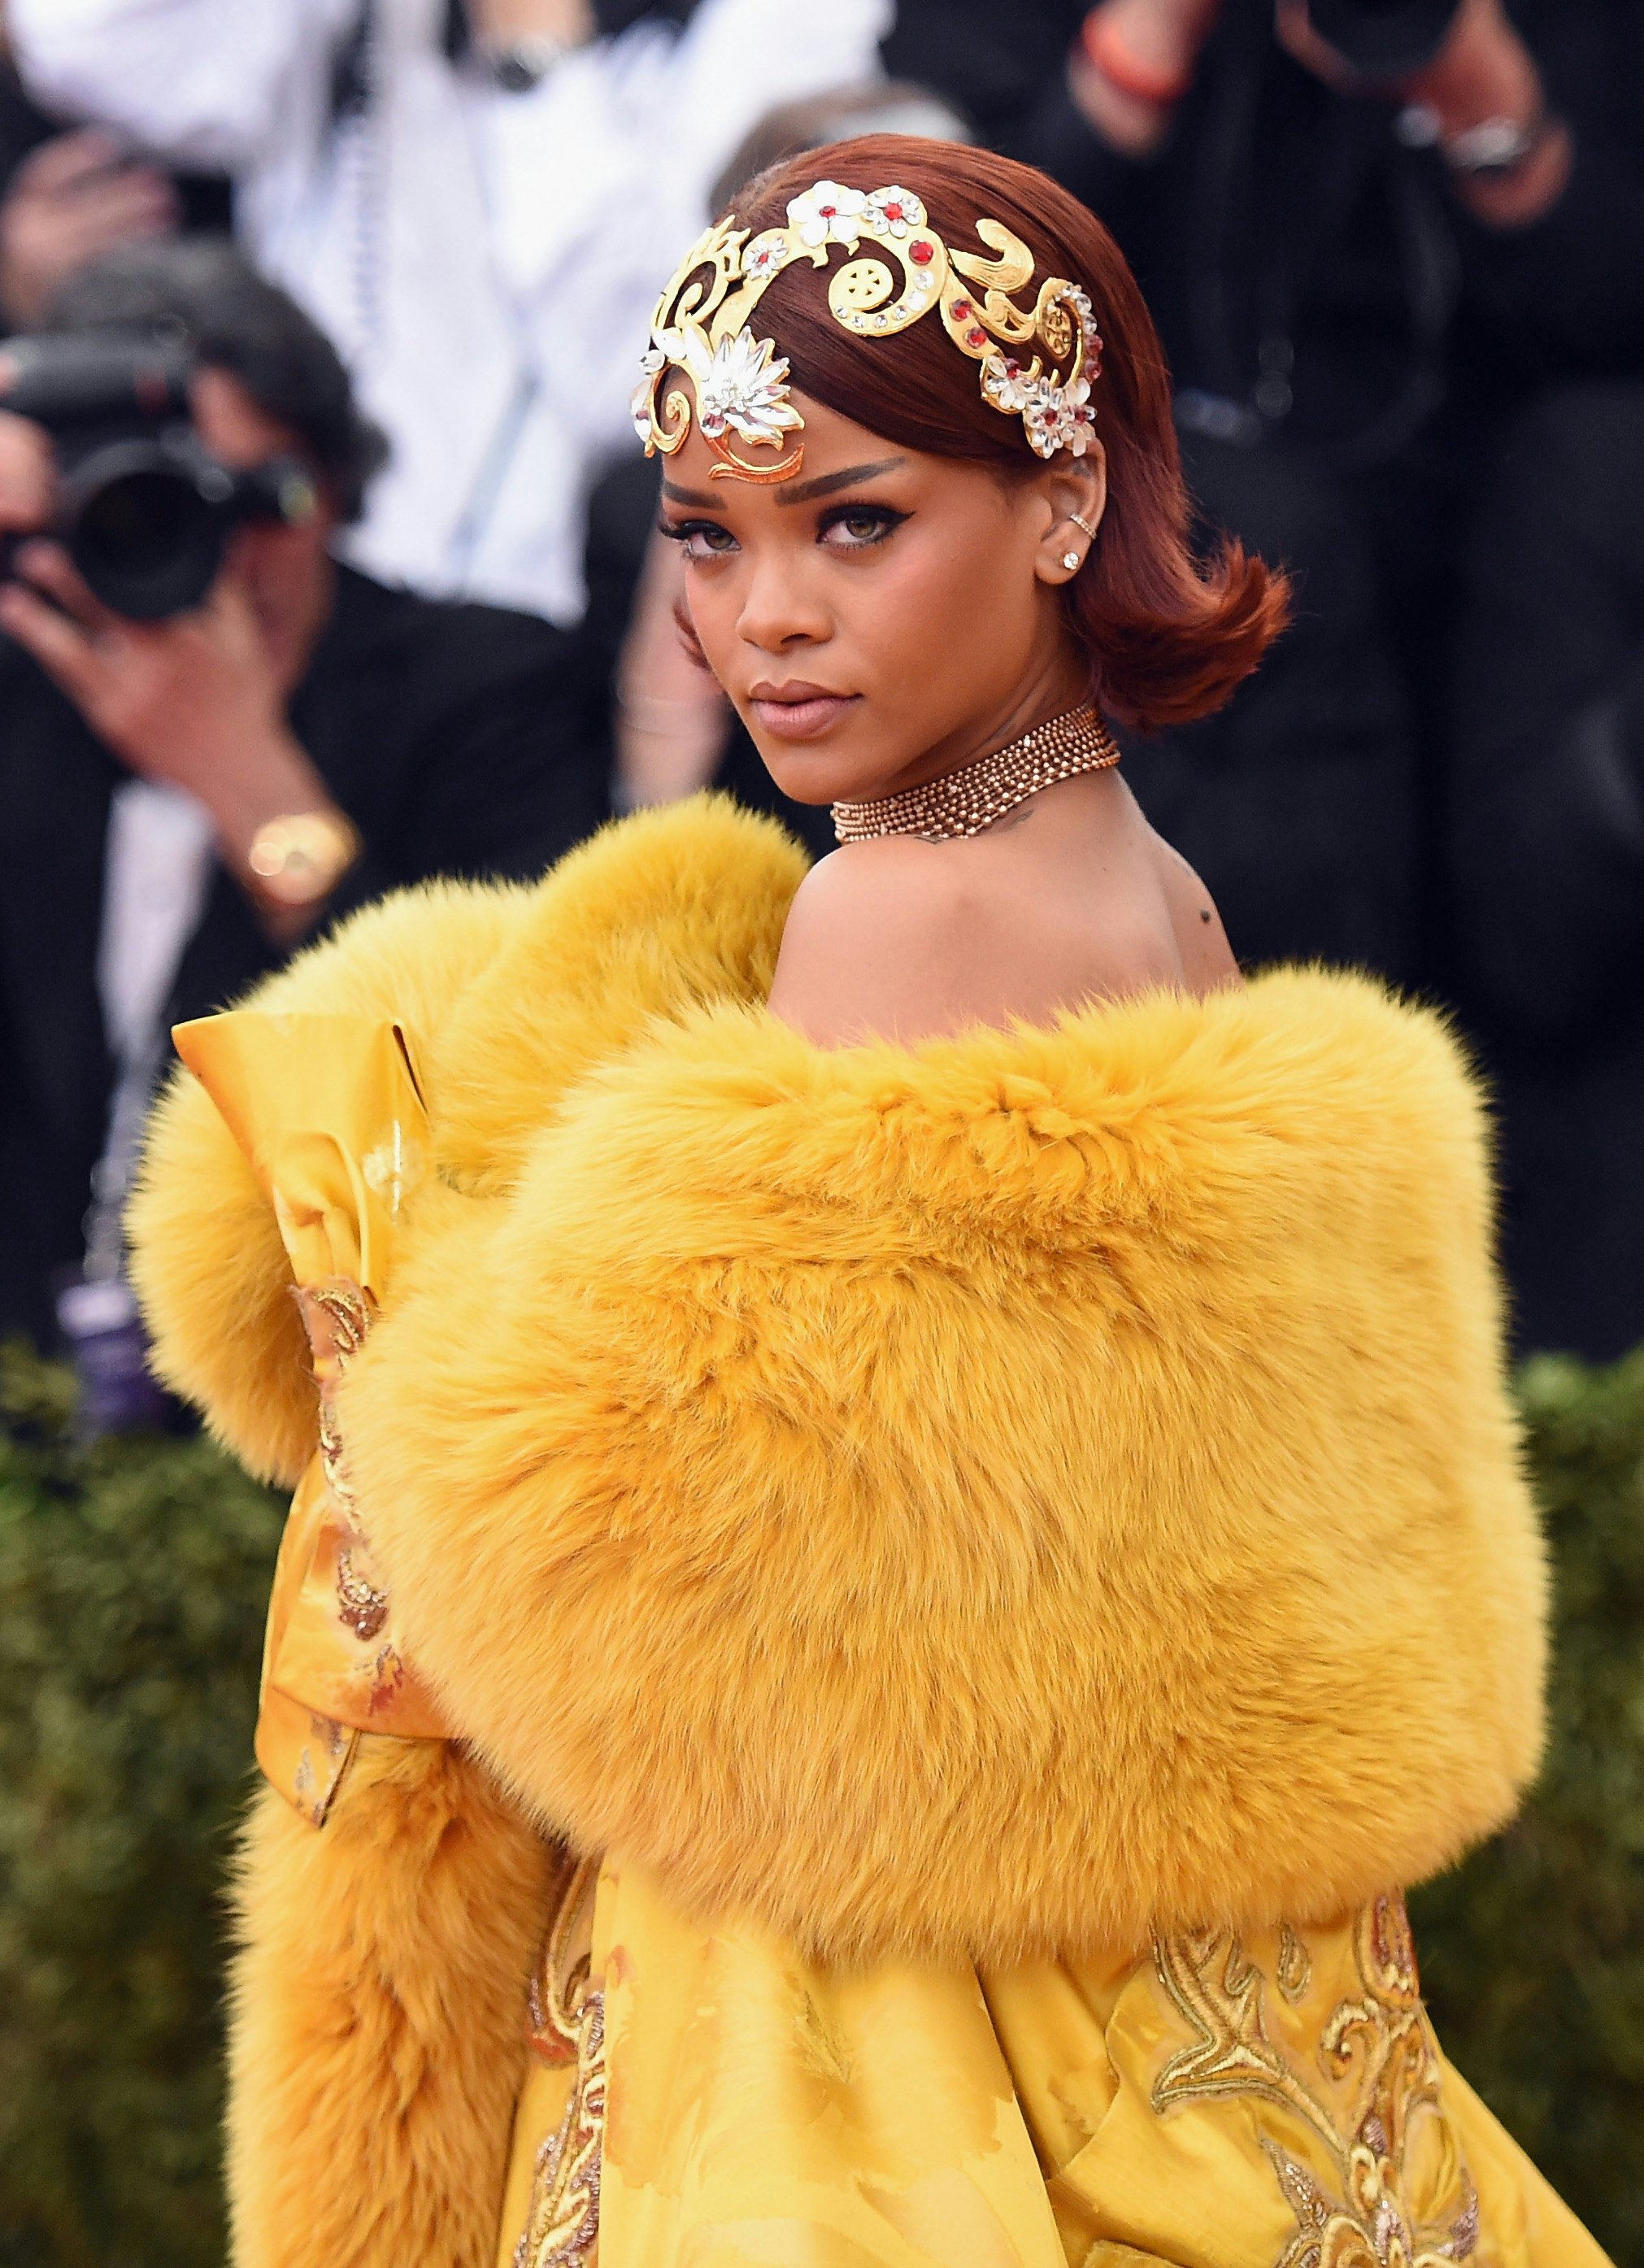 Style Bio: Rihanna's Fashion Evolution - Grazia USA